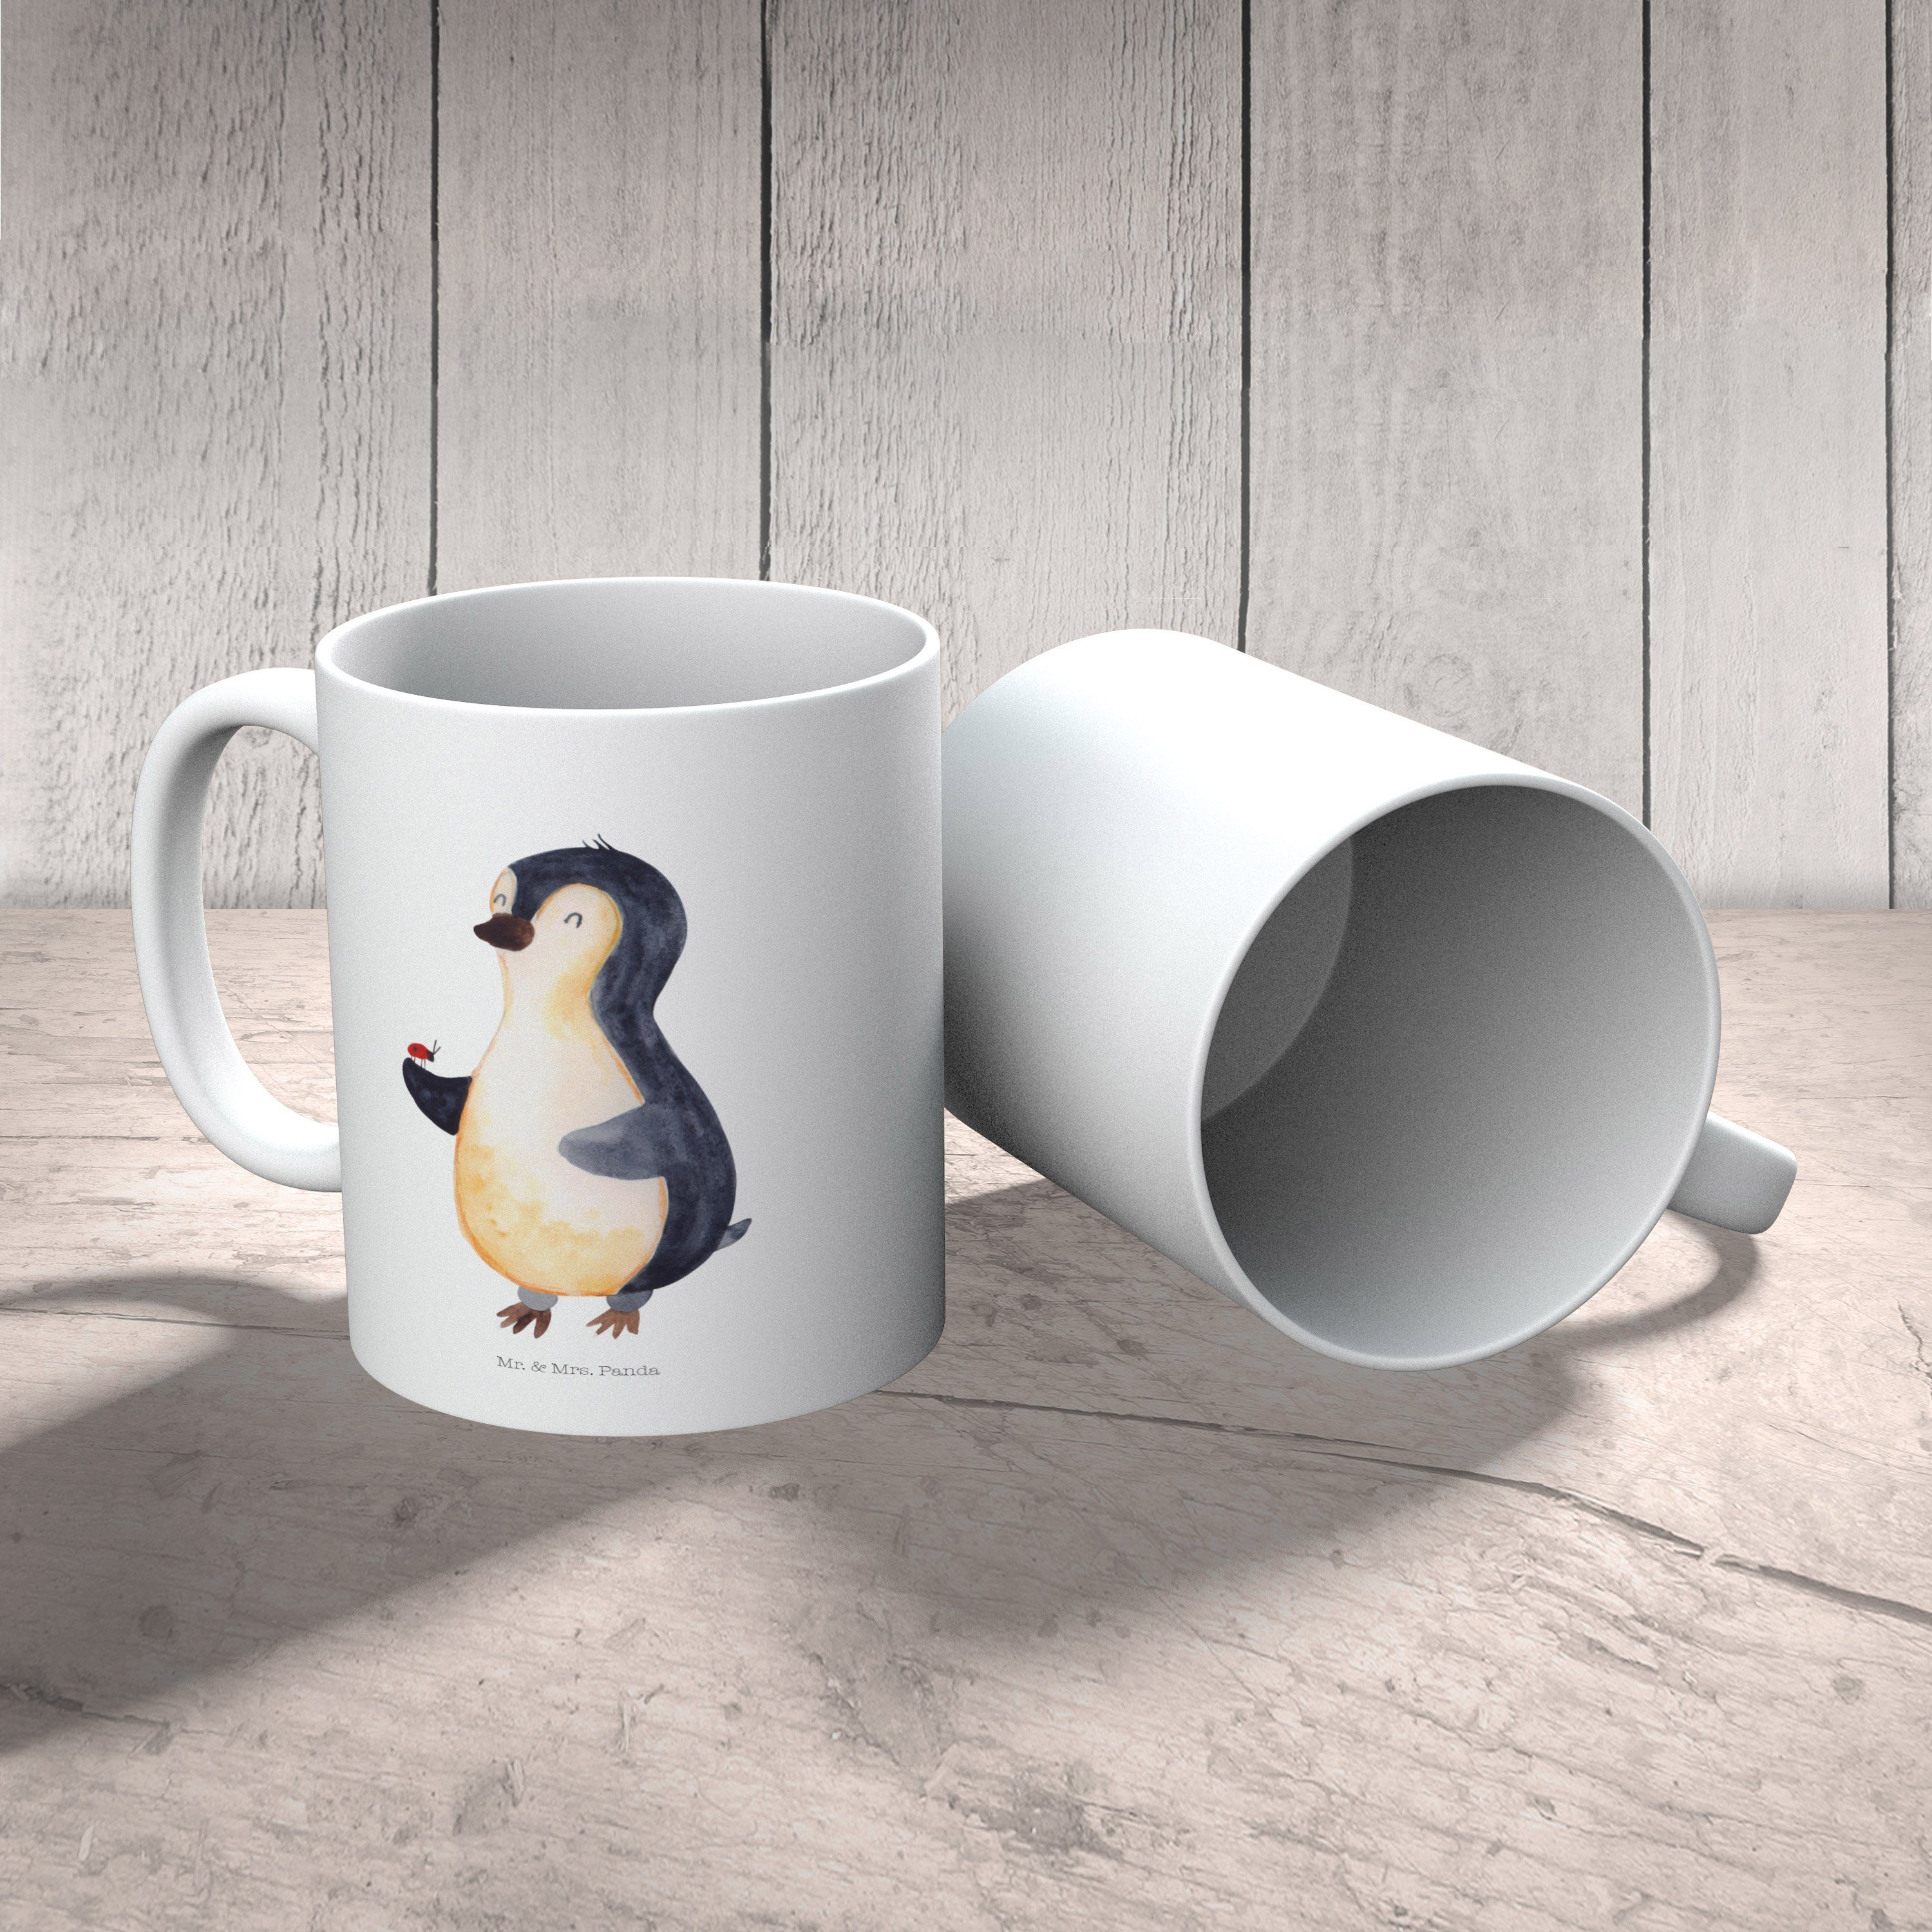 Mr. & Mrs. Panda - Keramik Tasse - Weiß Geschenk, Pinguin aufmerksam, Tasse, Teebecher, Marienkäfer